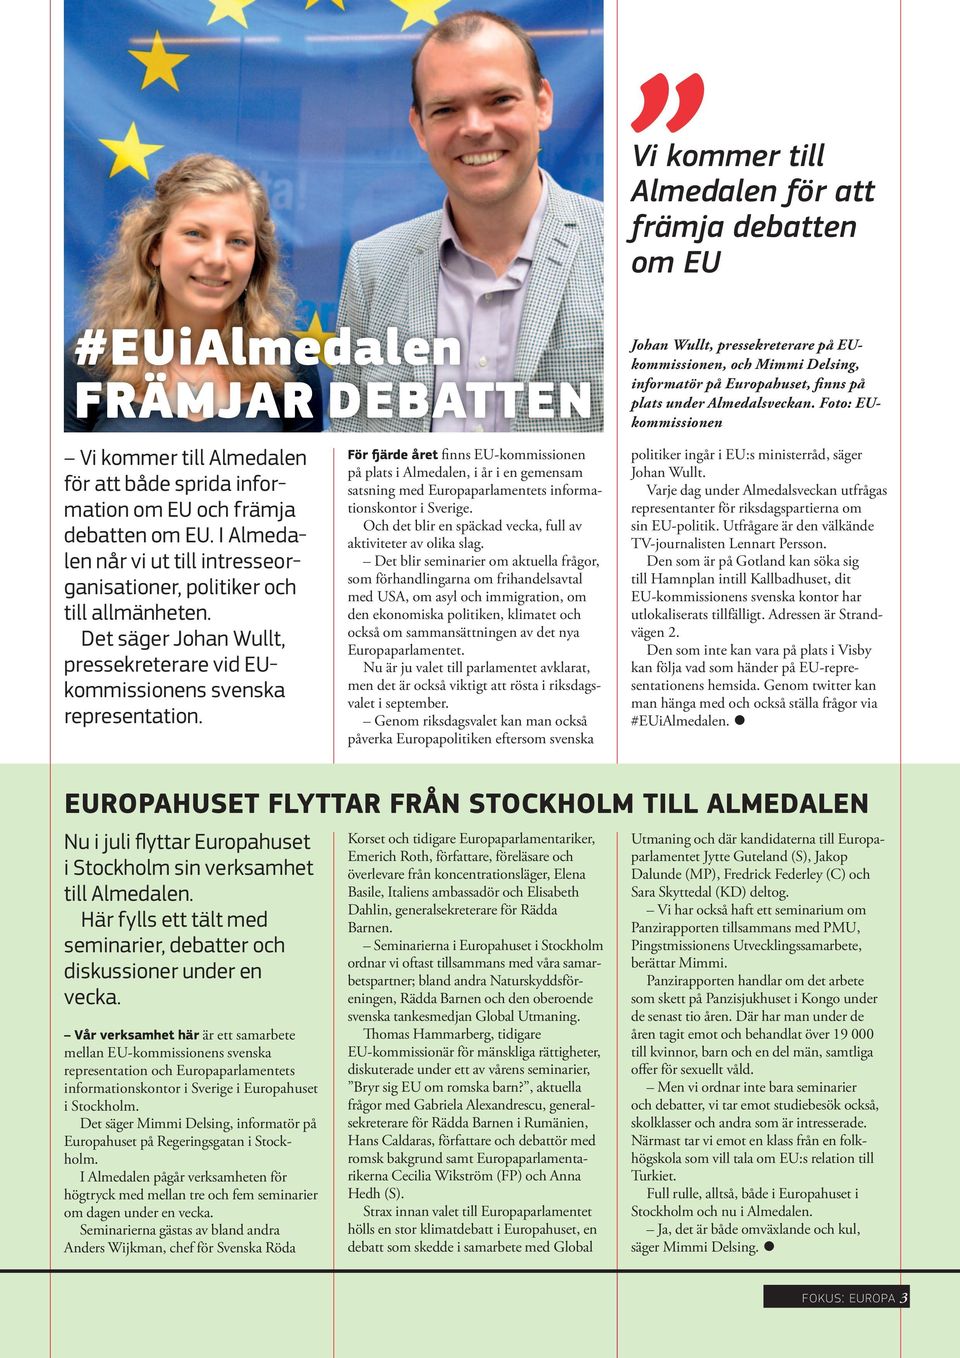 För fjärde året finns EU-kommissionen på plats i Almedalen, i år i en gemensam satsning med Europaparlamentets informationskontor i Sverige.